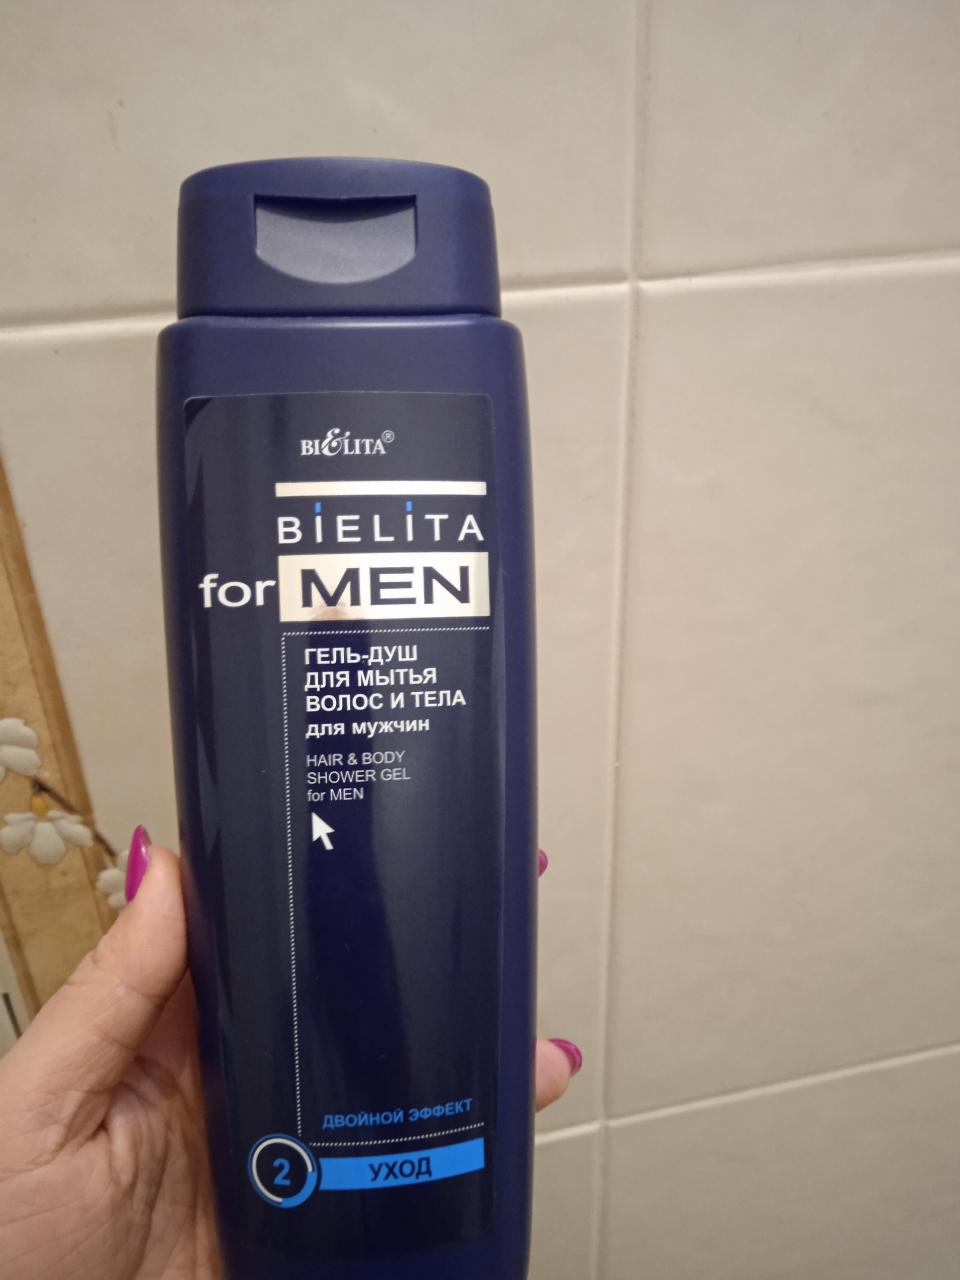 Отзыв на товар: Гель-душ для мытья волос и тела Hair & Body Shower Gel. Белита - Витэкс.